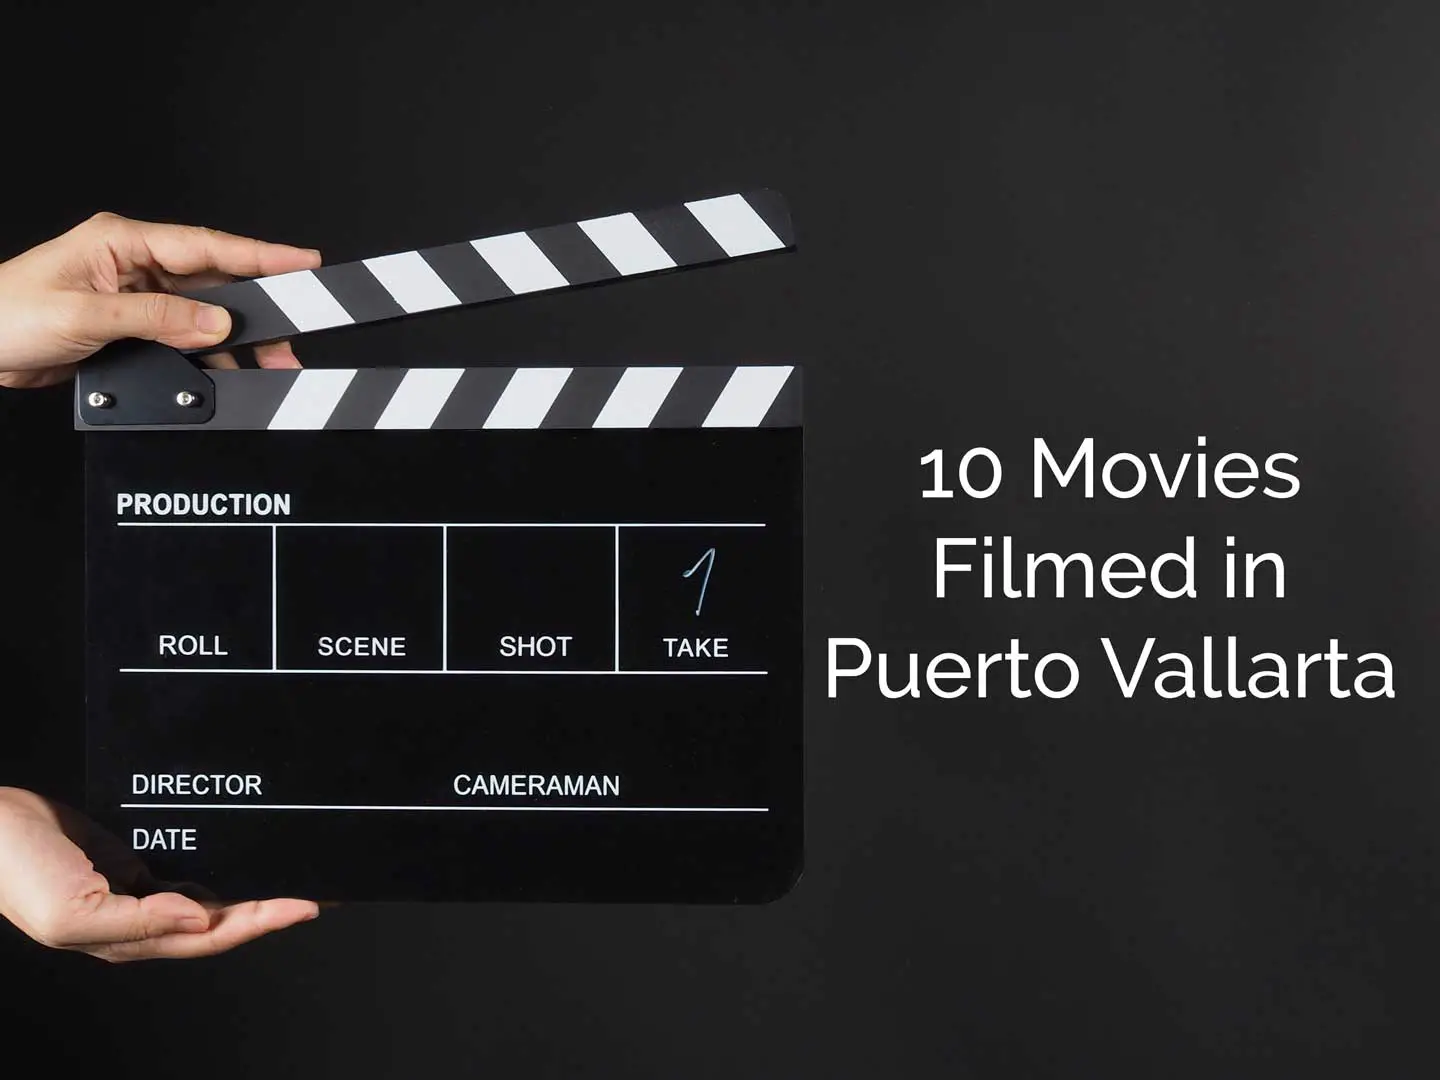 Ten Movies Filmed in Puerto Vallarta